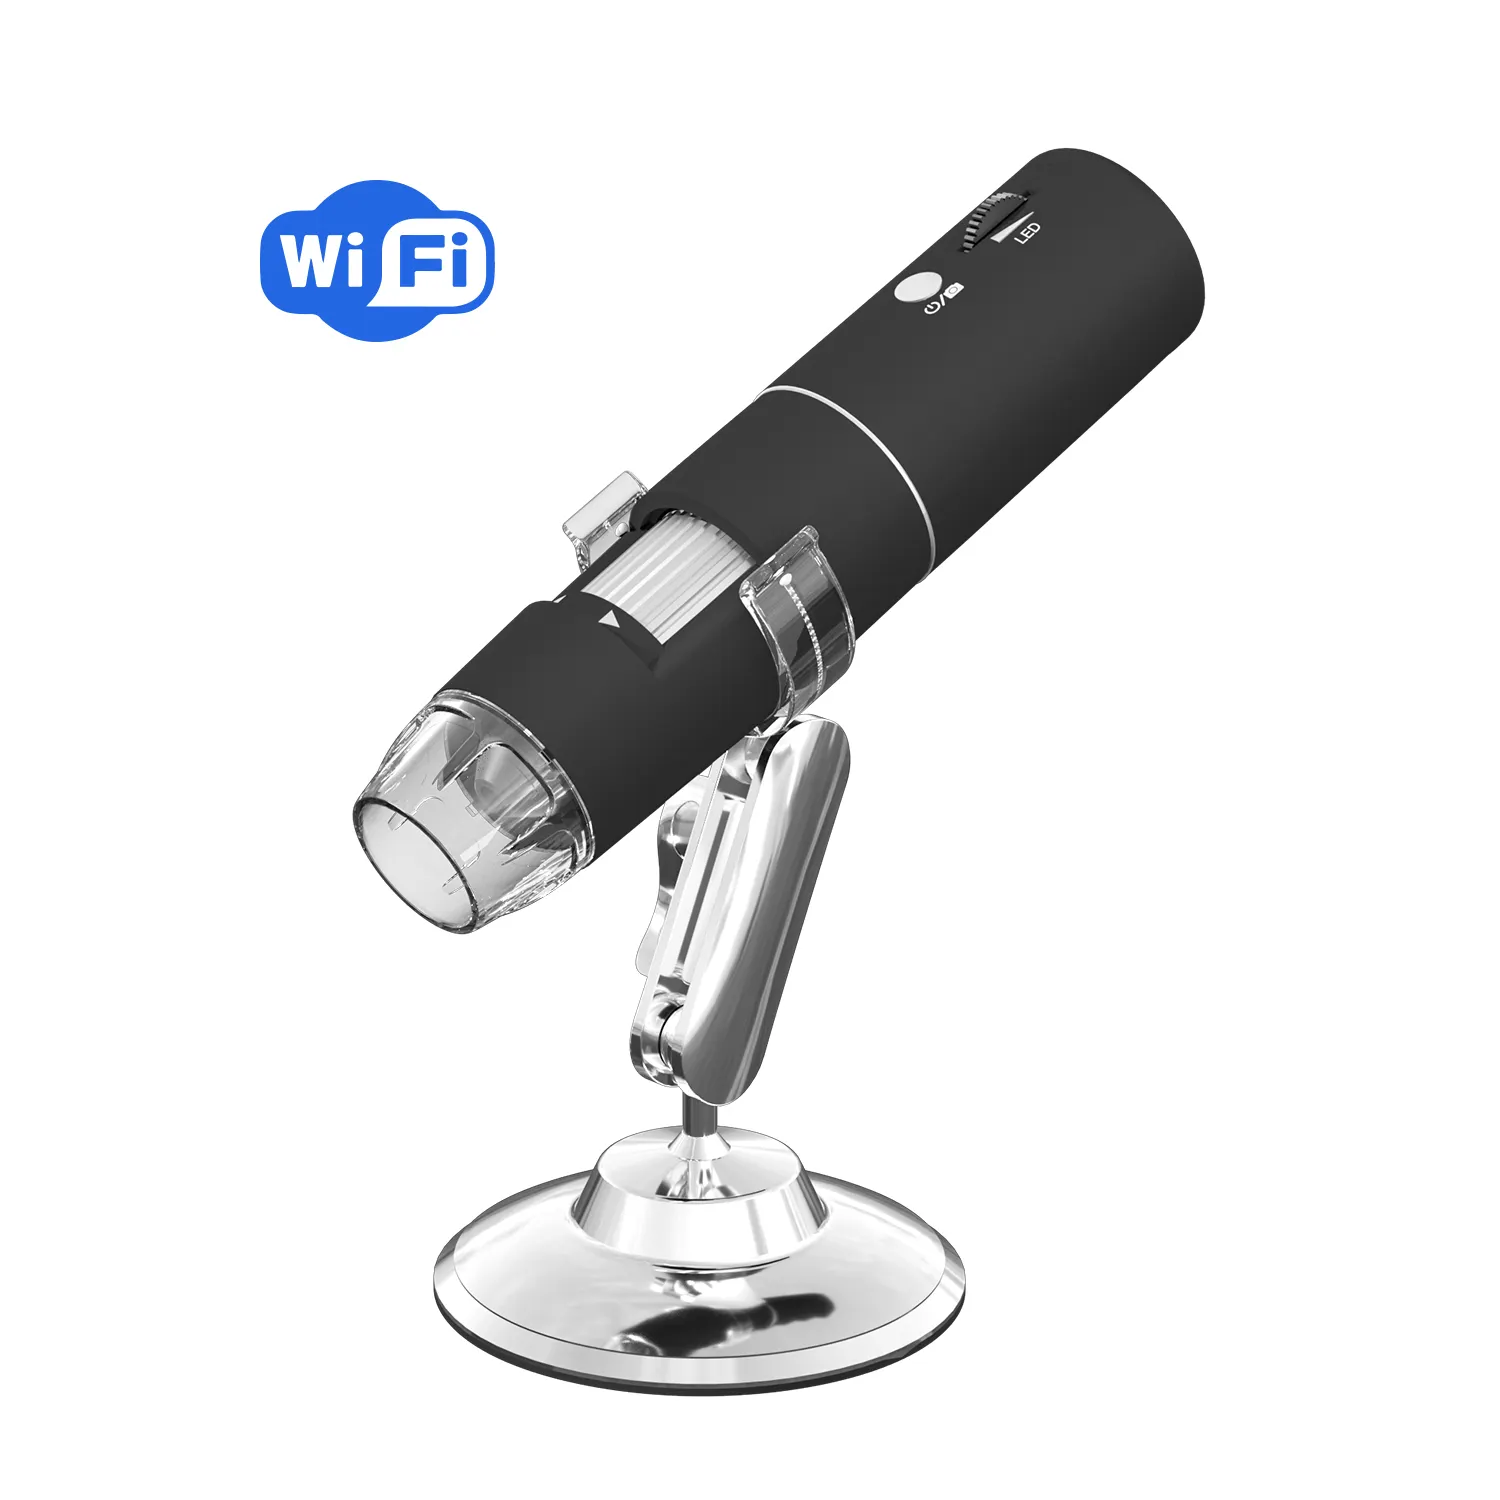 303 промышленный микроскоп ALEEZI 1000X 1080P HD Wi-Fi беспроводной цифровой микроскоп электронный измерительный USB-микроскоп